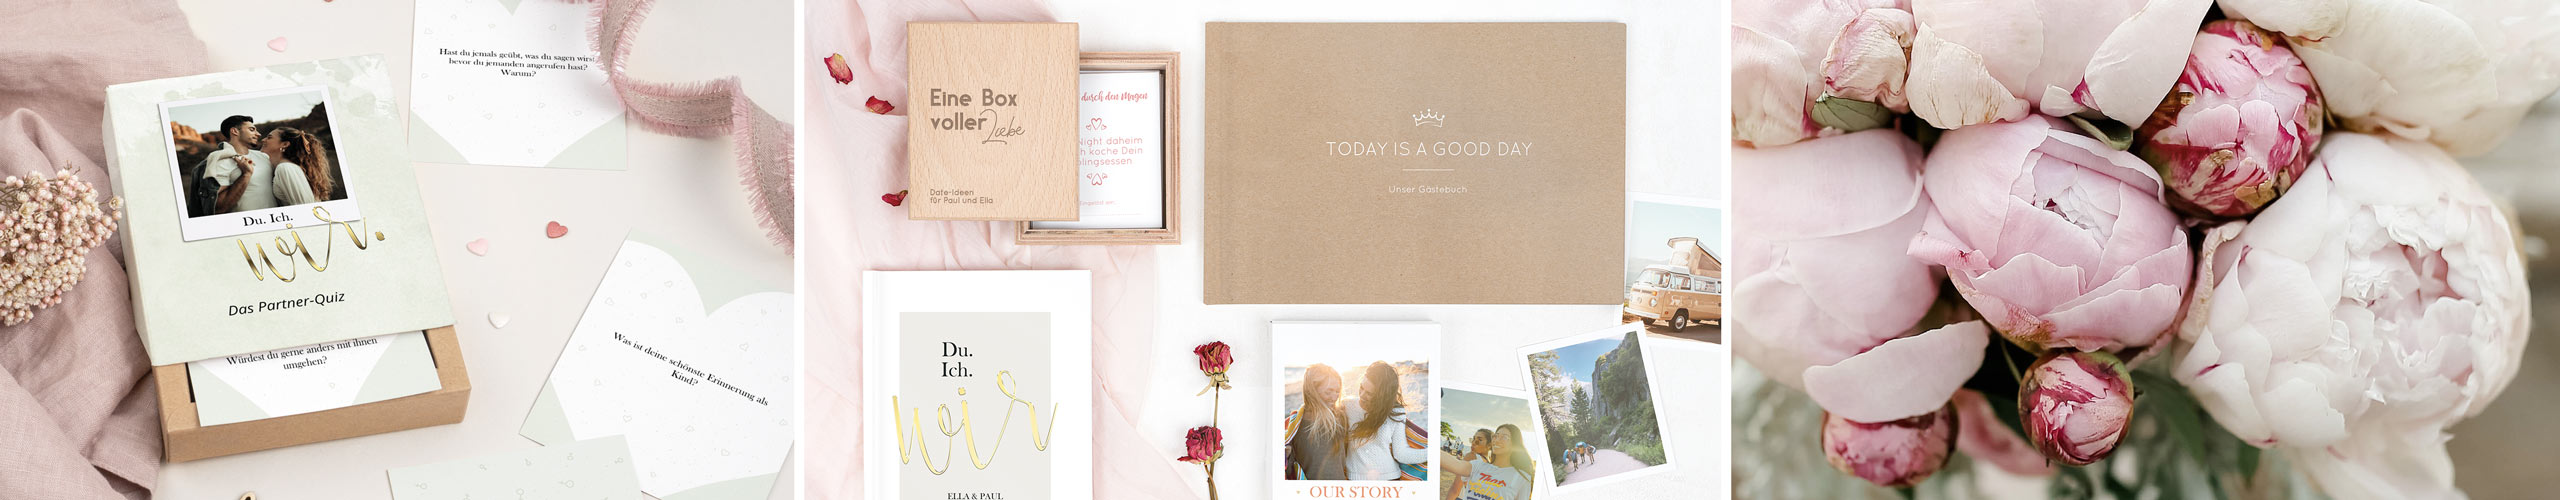 Gästebuch, Pärchenquiz und Bilderbox als Geschenke zur Hochzeit